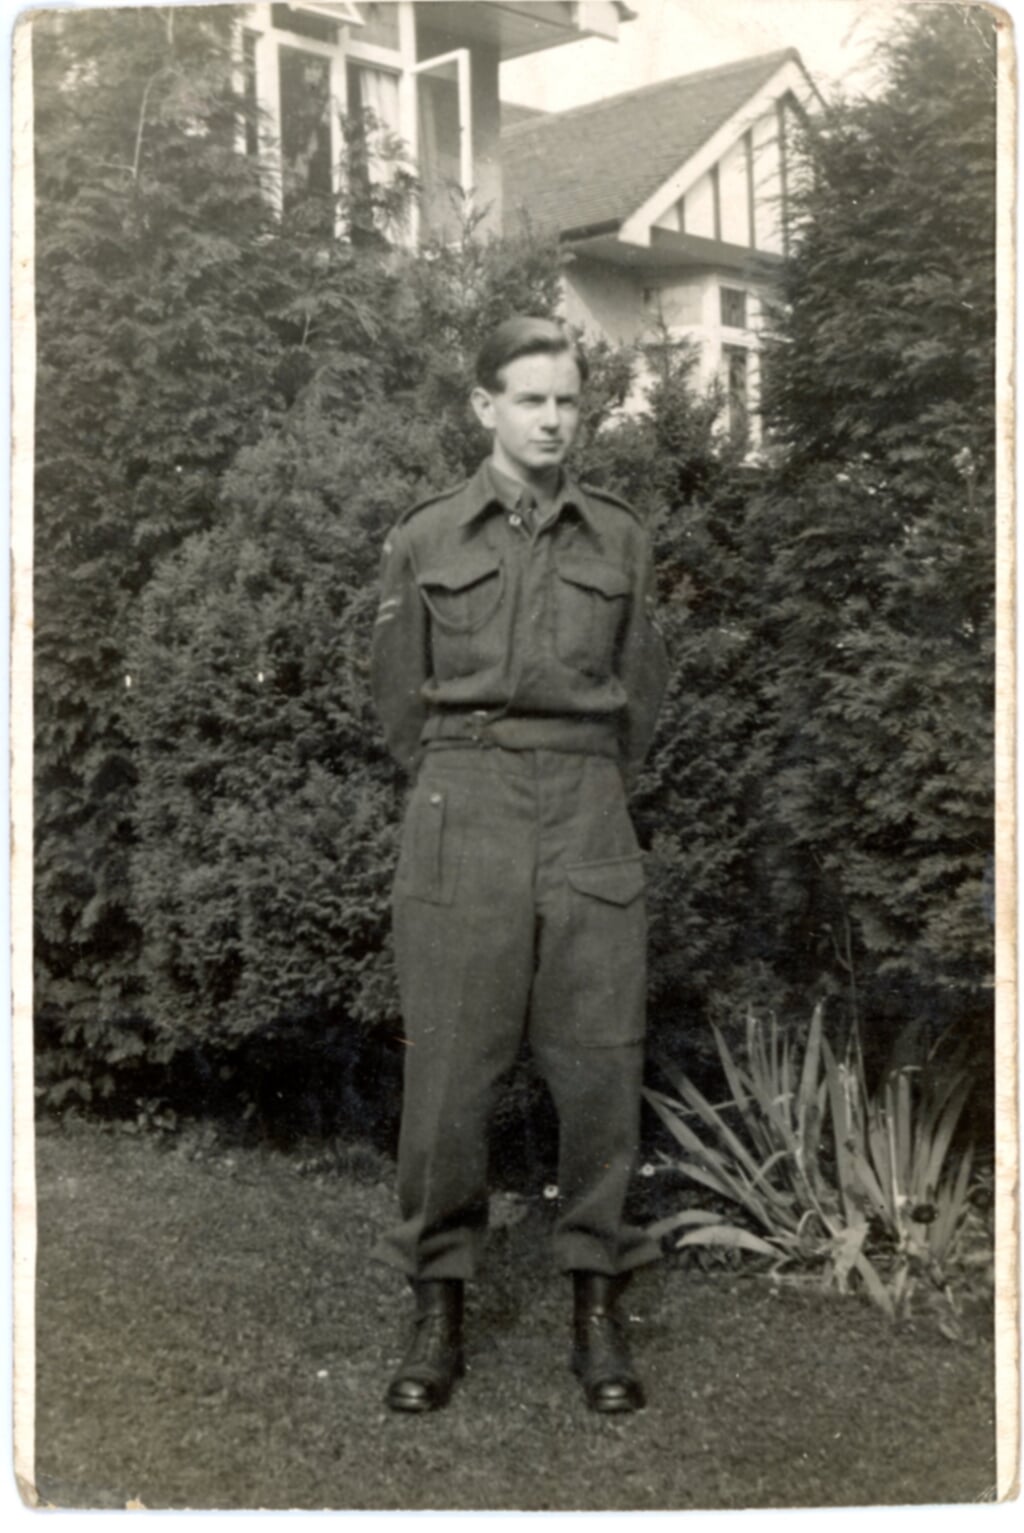 Godfrey Evans in uniform tijdens een verlof, 1944. 